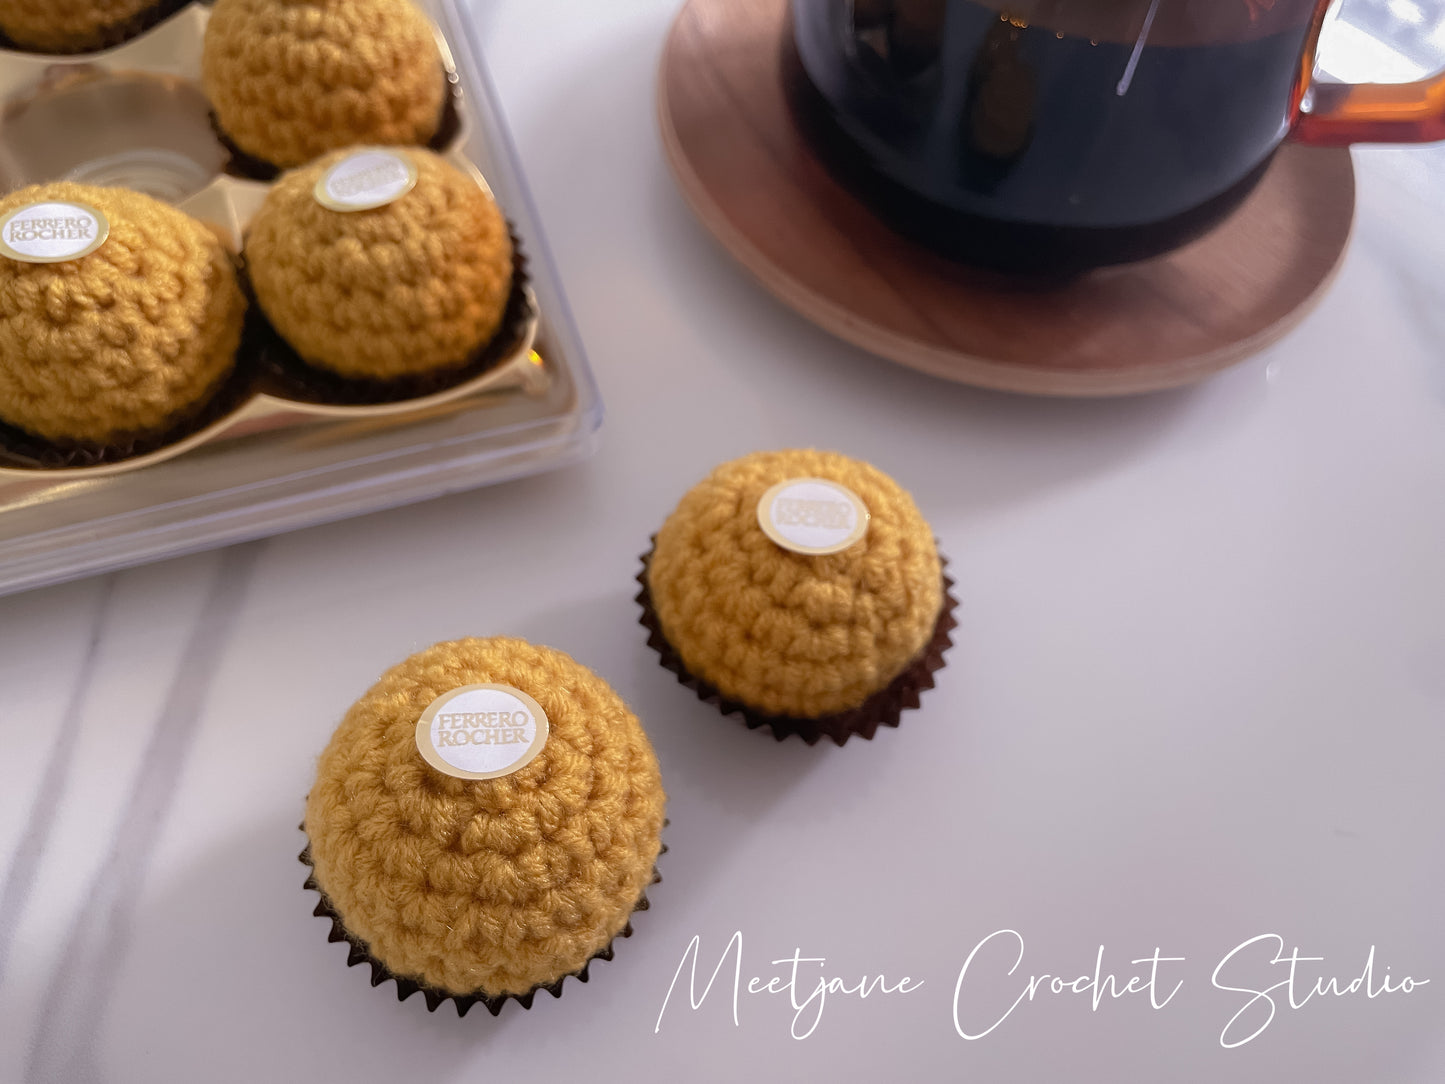 Crochet gift|Melbourne |Crochet Ferrero|Valentine's Day gift